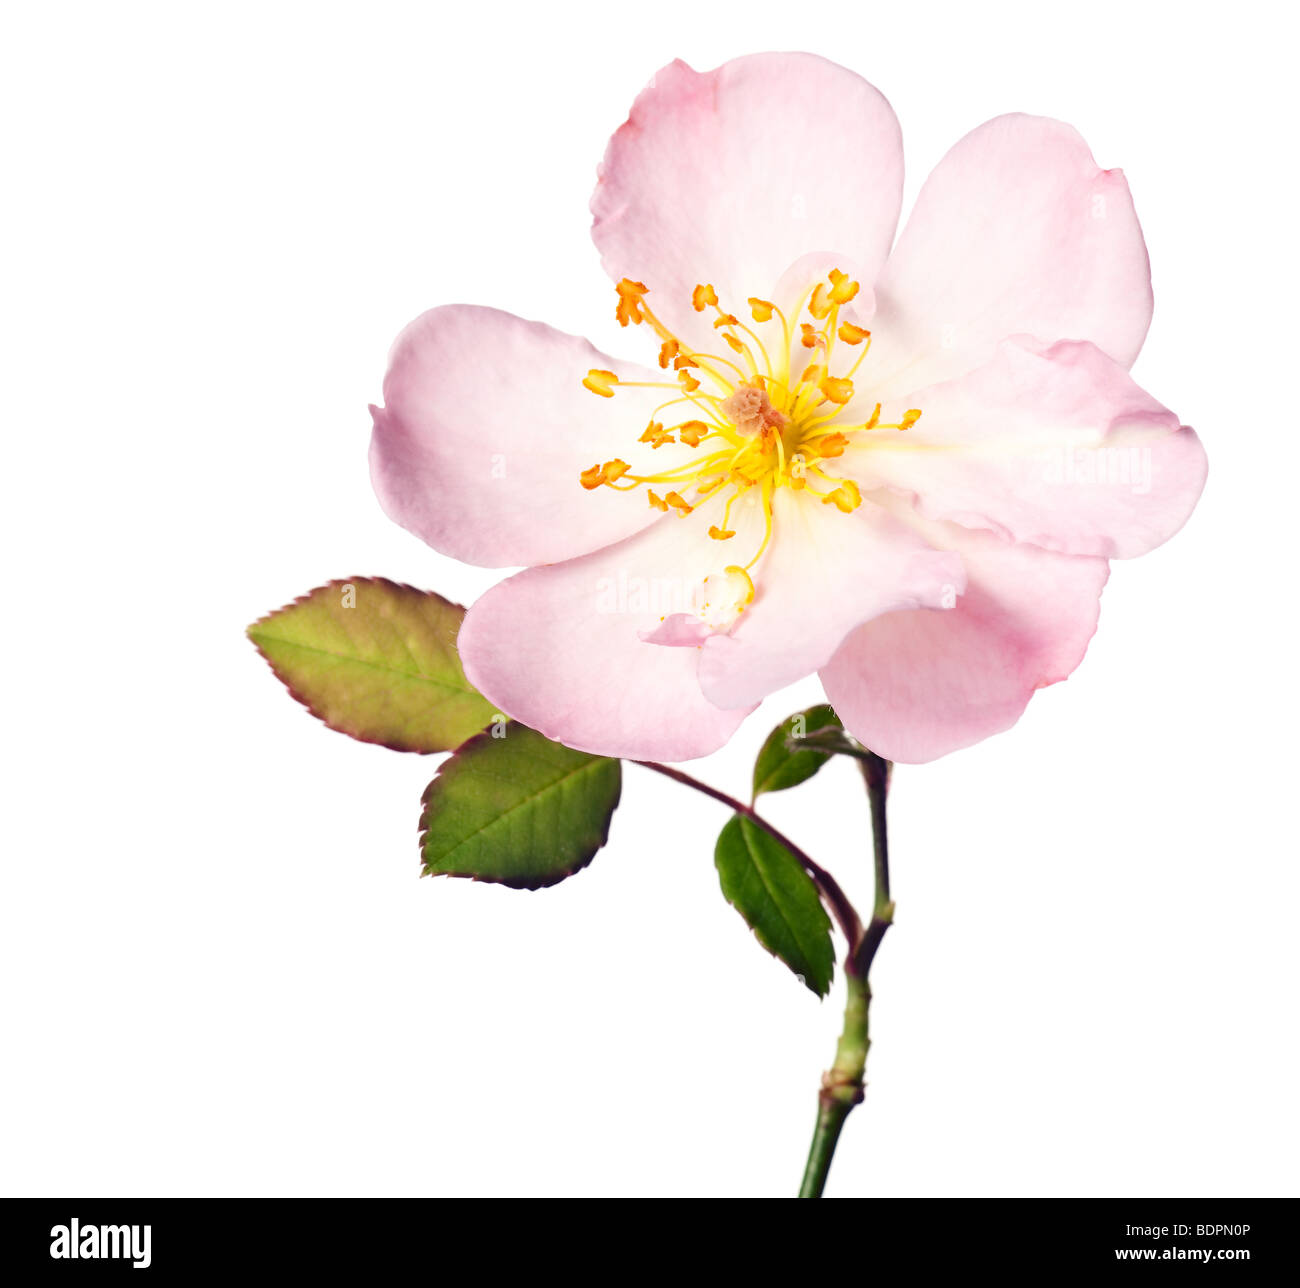 Rosa Garten Rose auf einem reinen weißen Hintergrund isoliert Stockfoto